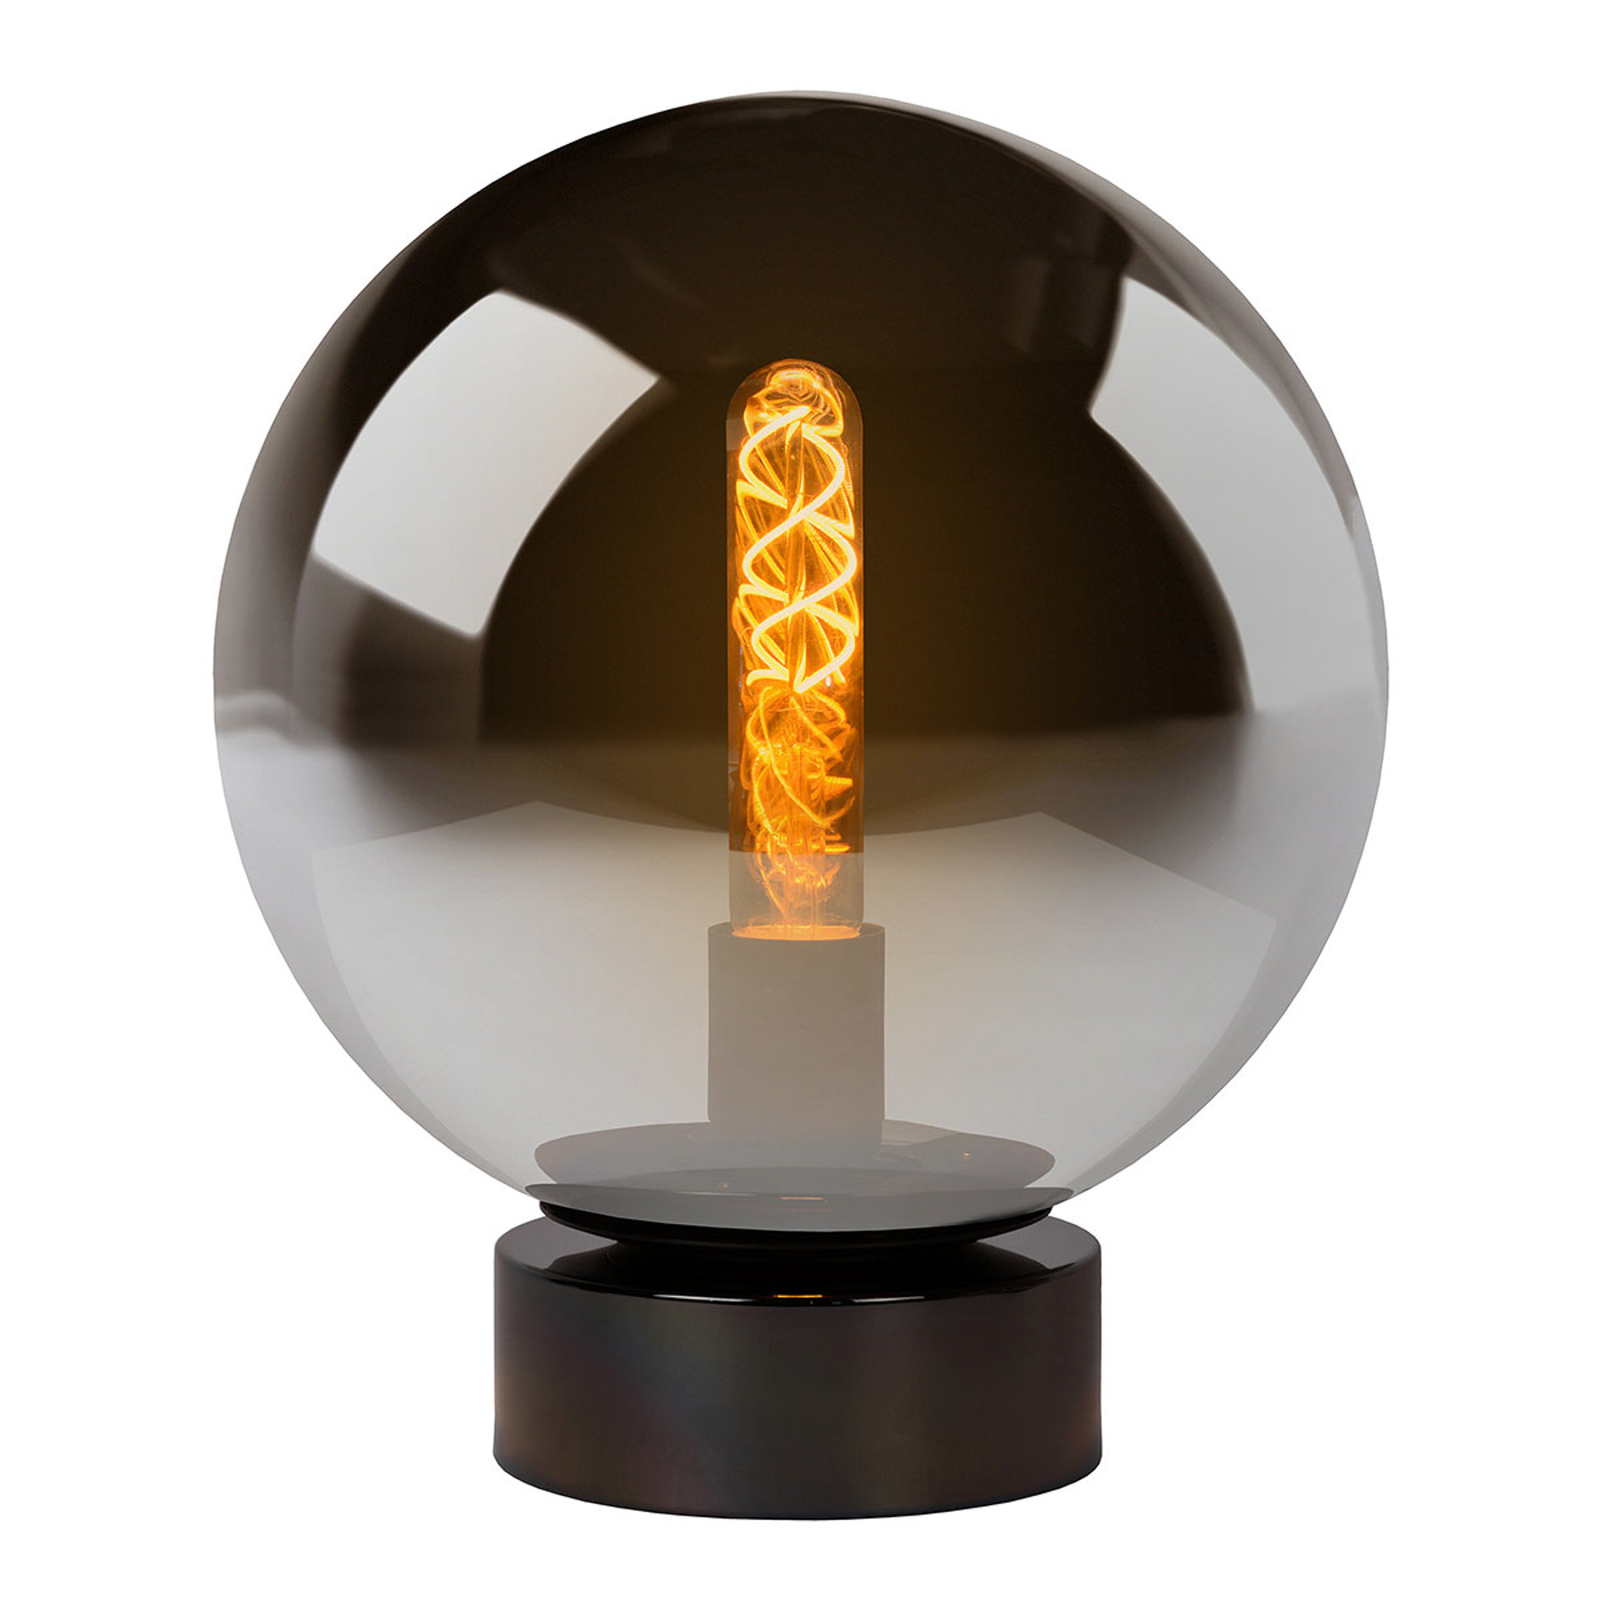 Szklana lampa stołowa Jorit o kulistym kształcie, 25 cm